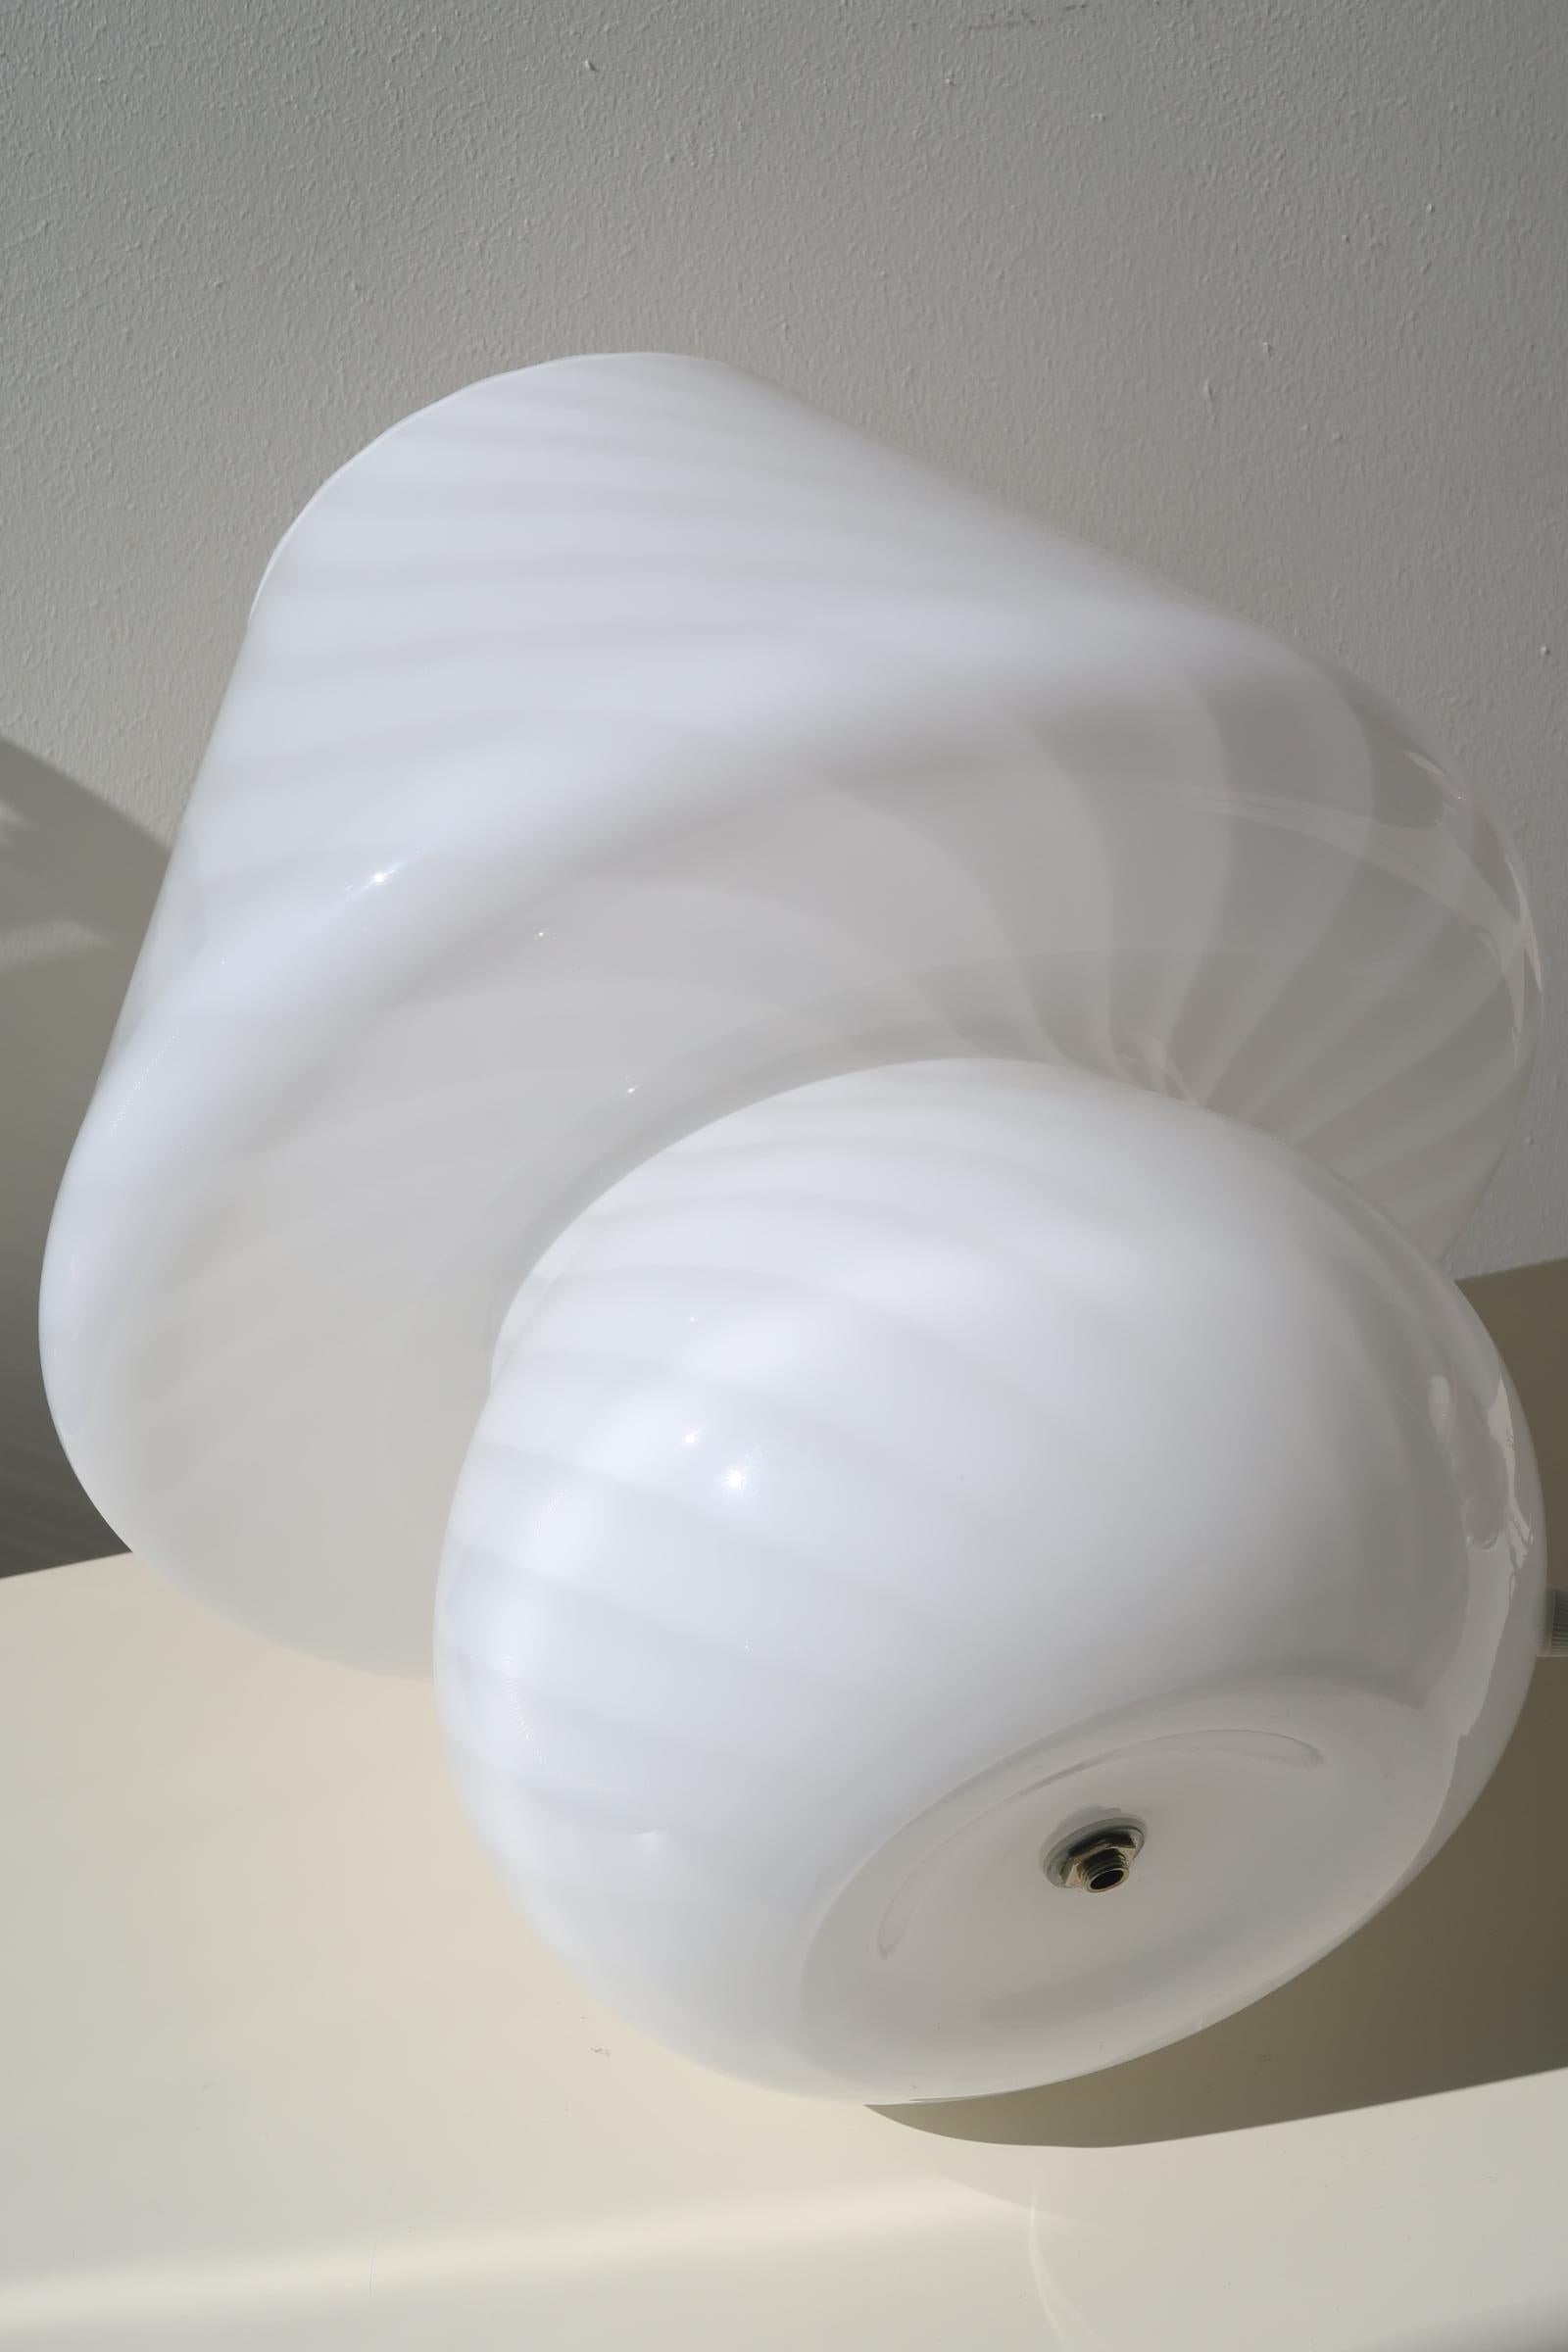 Late 20th Century Extra Large Murano Mushroom Lamp 1970s White Swirl Italian Mouth Blown Glass